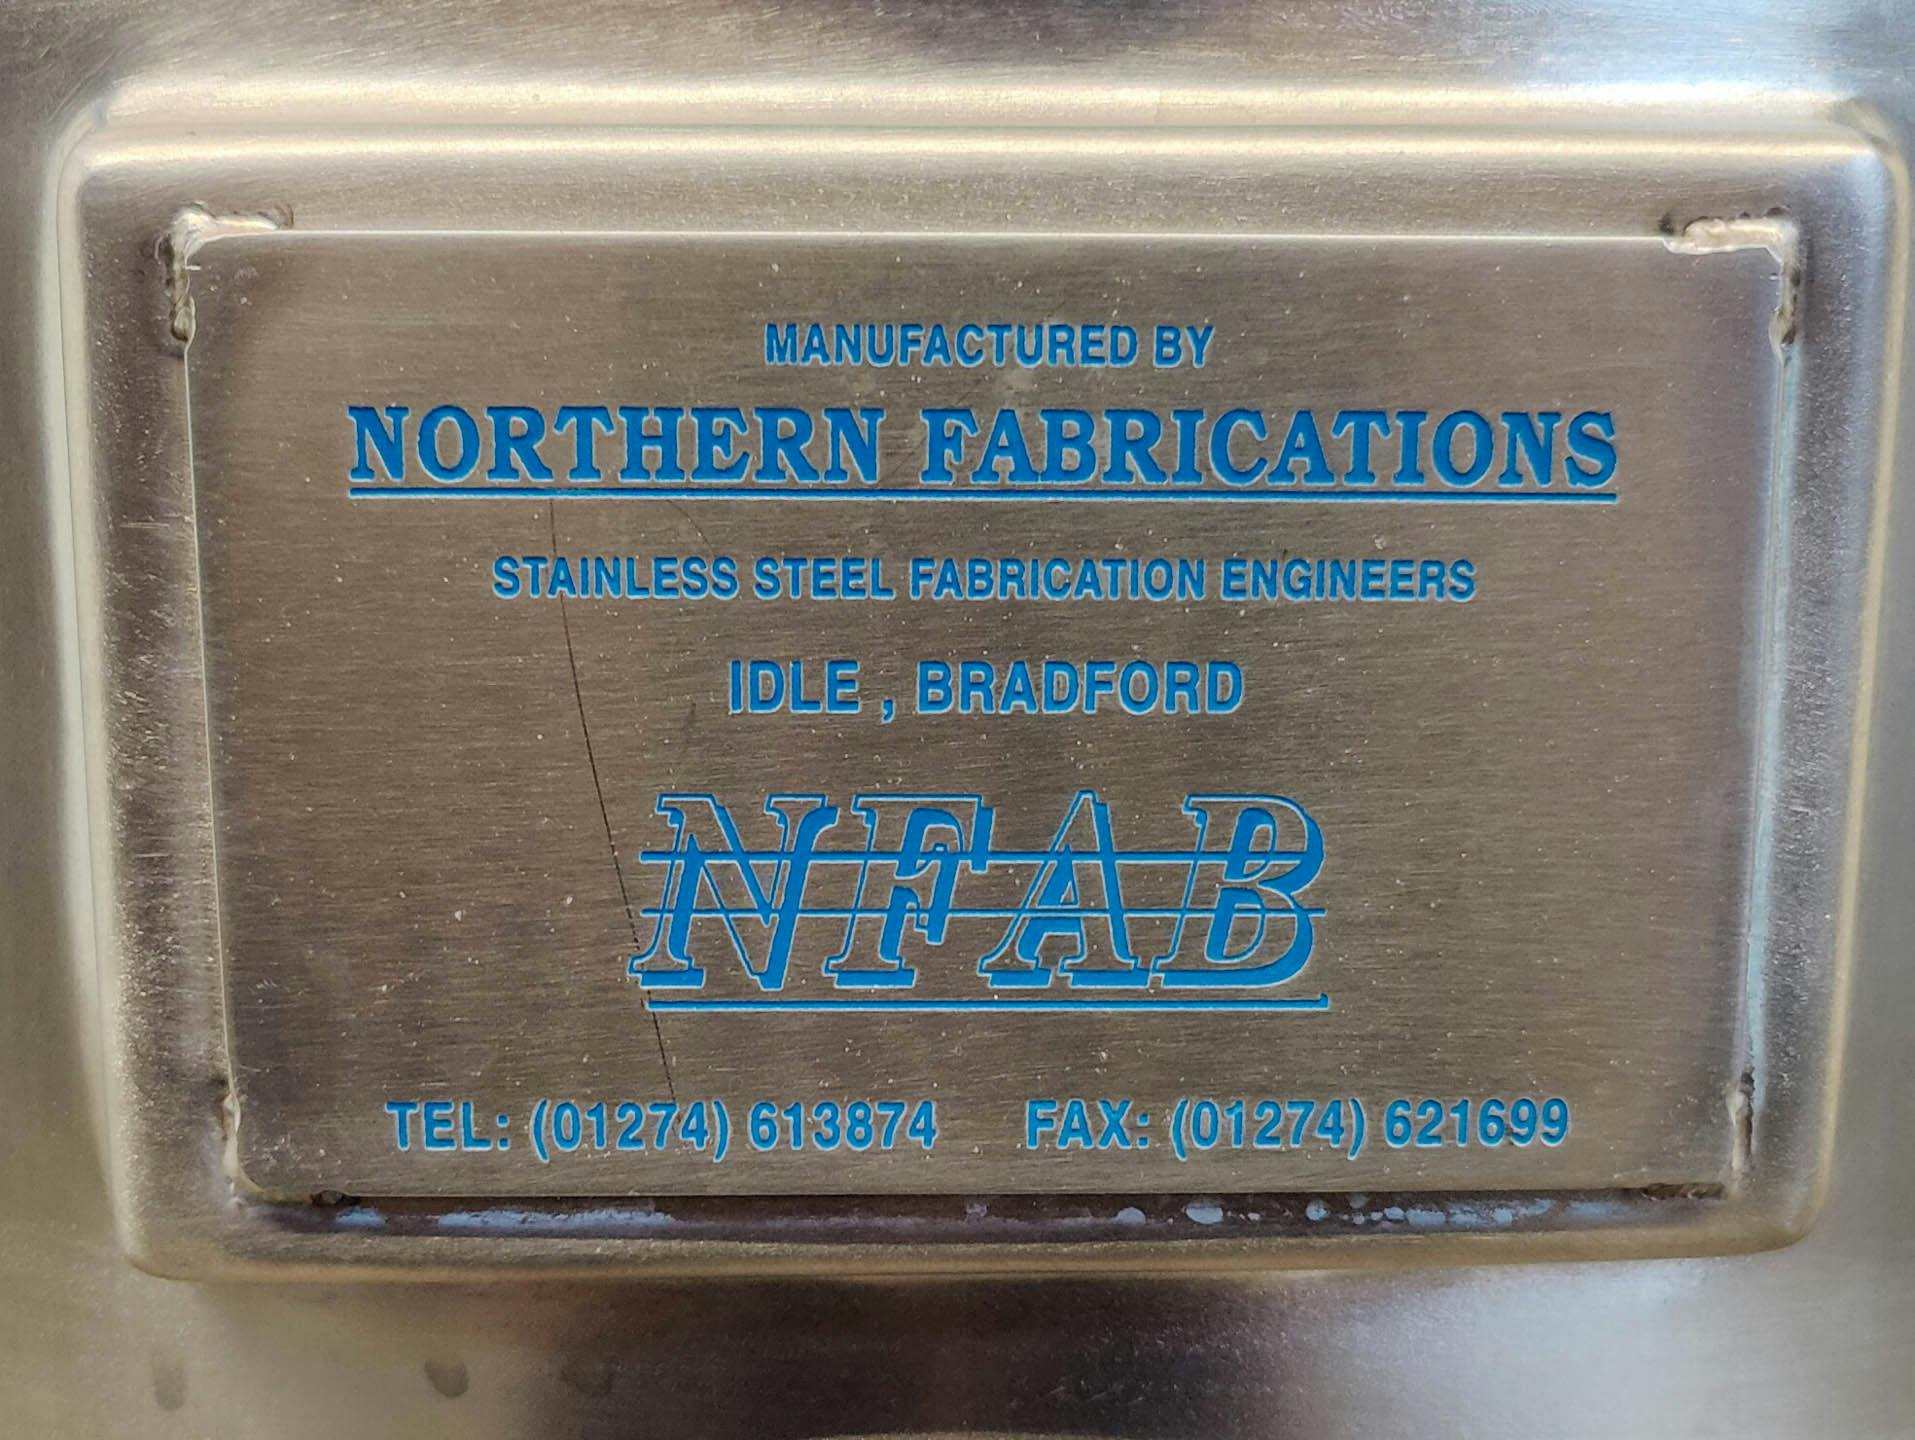 Northern fabrications 350 Ltr. - Míchací nádoba - image 6